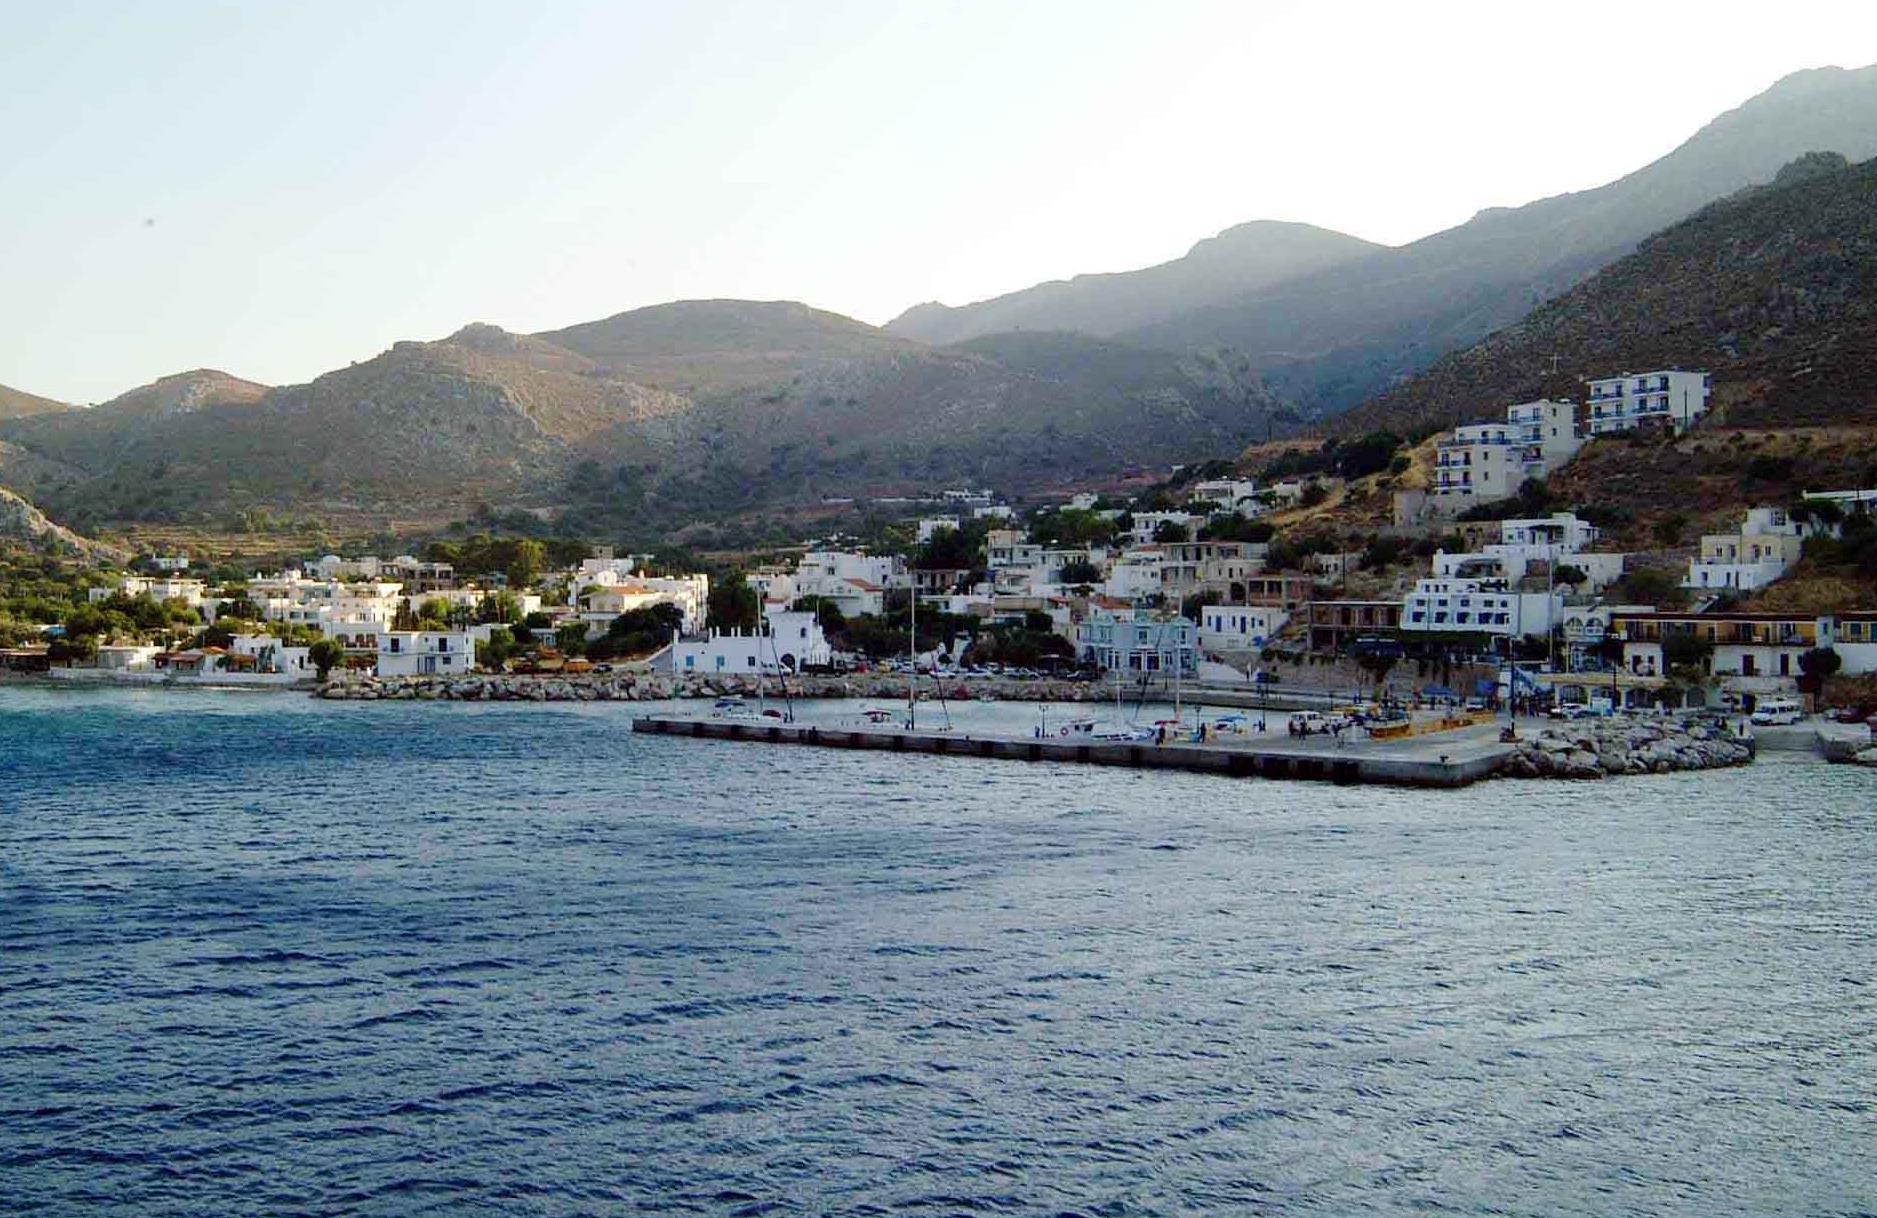 Η μικρή Τήλος «το πρώτο ενεργειακά αυτόνομο νησί της Μεσογείου»